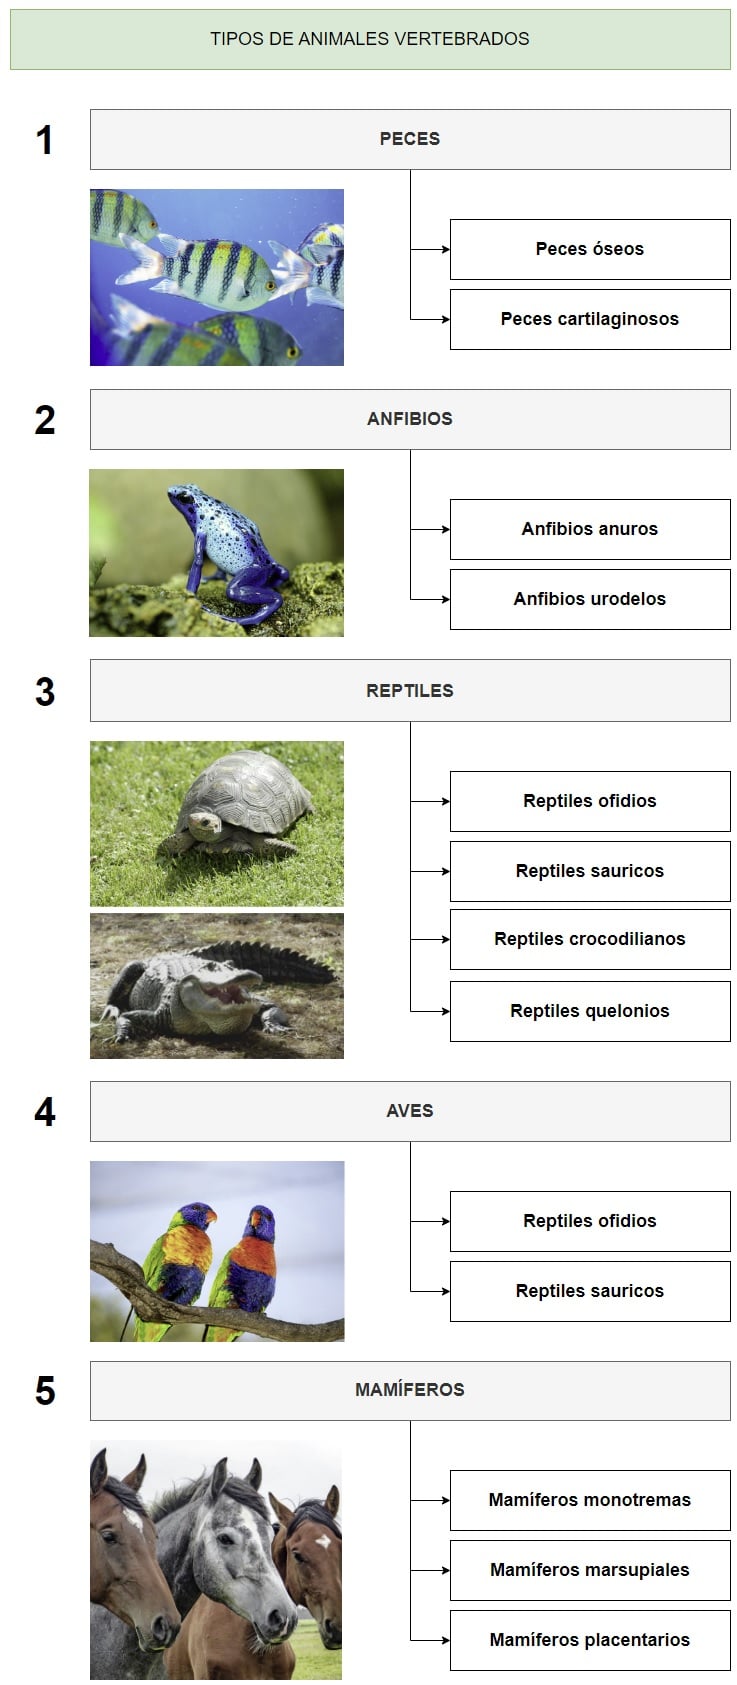 Clasificación de los tipos de animales vertebrados